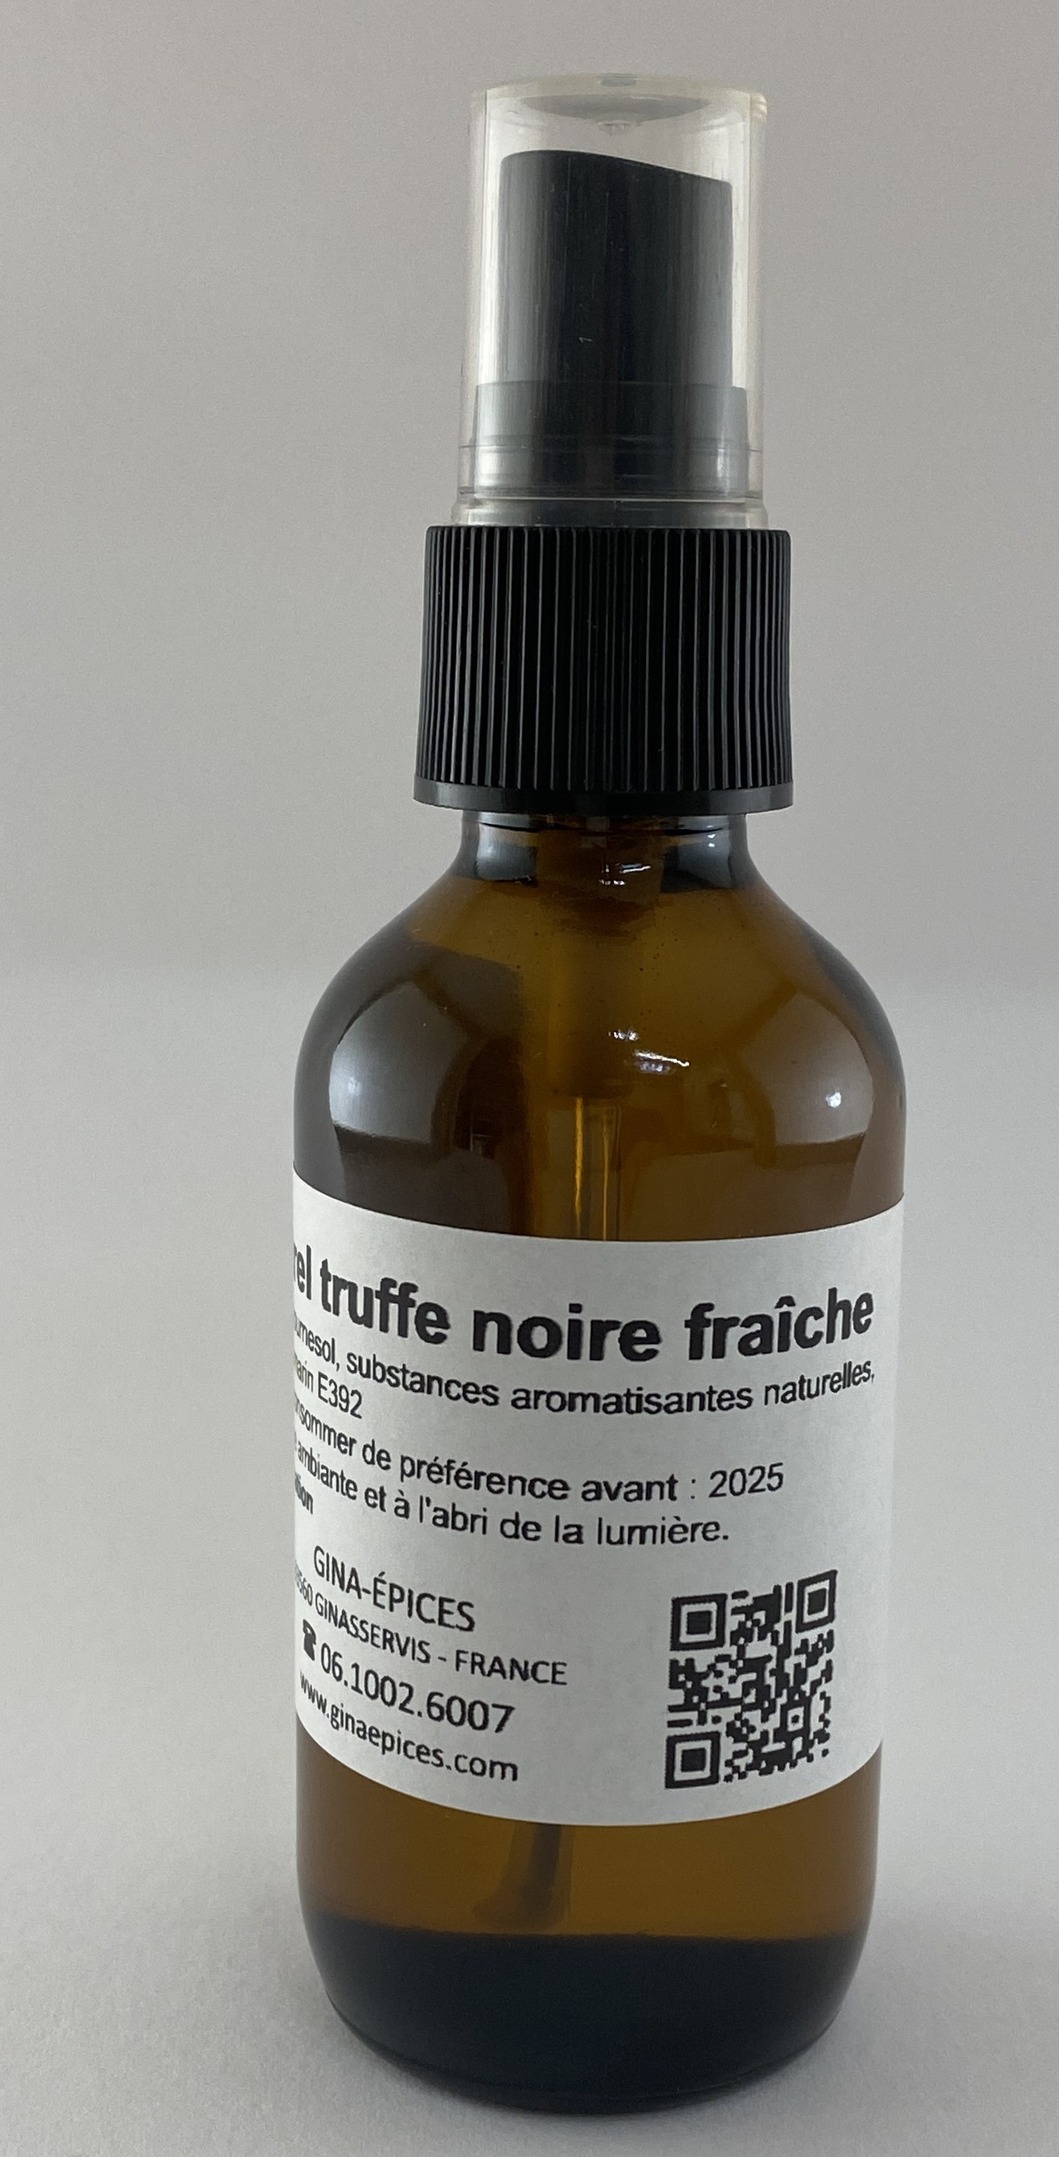 Arôme Truffe noire fraîche 60 ml